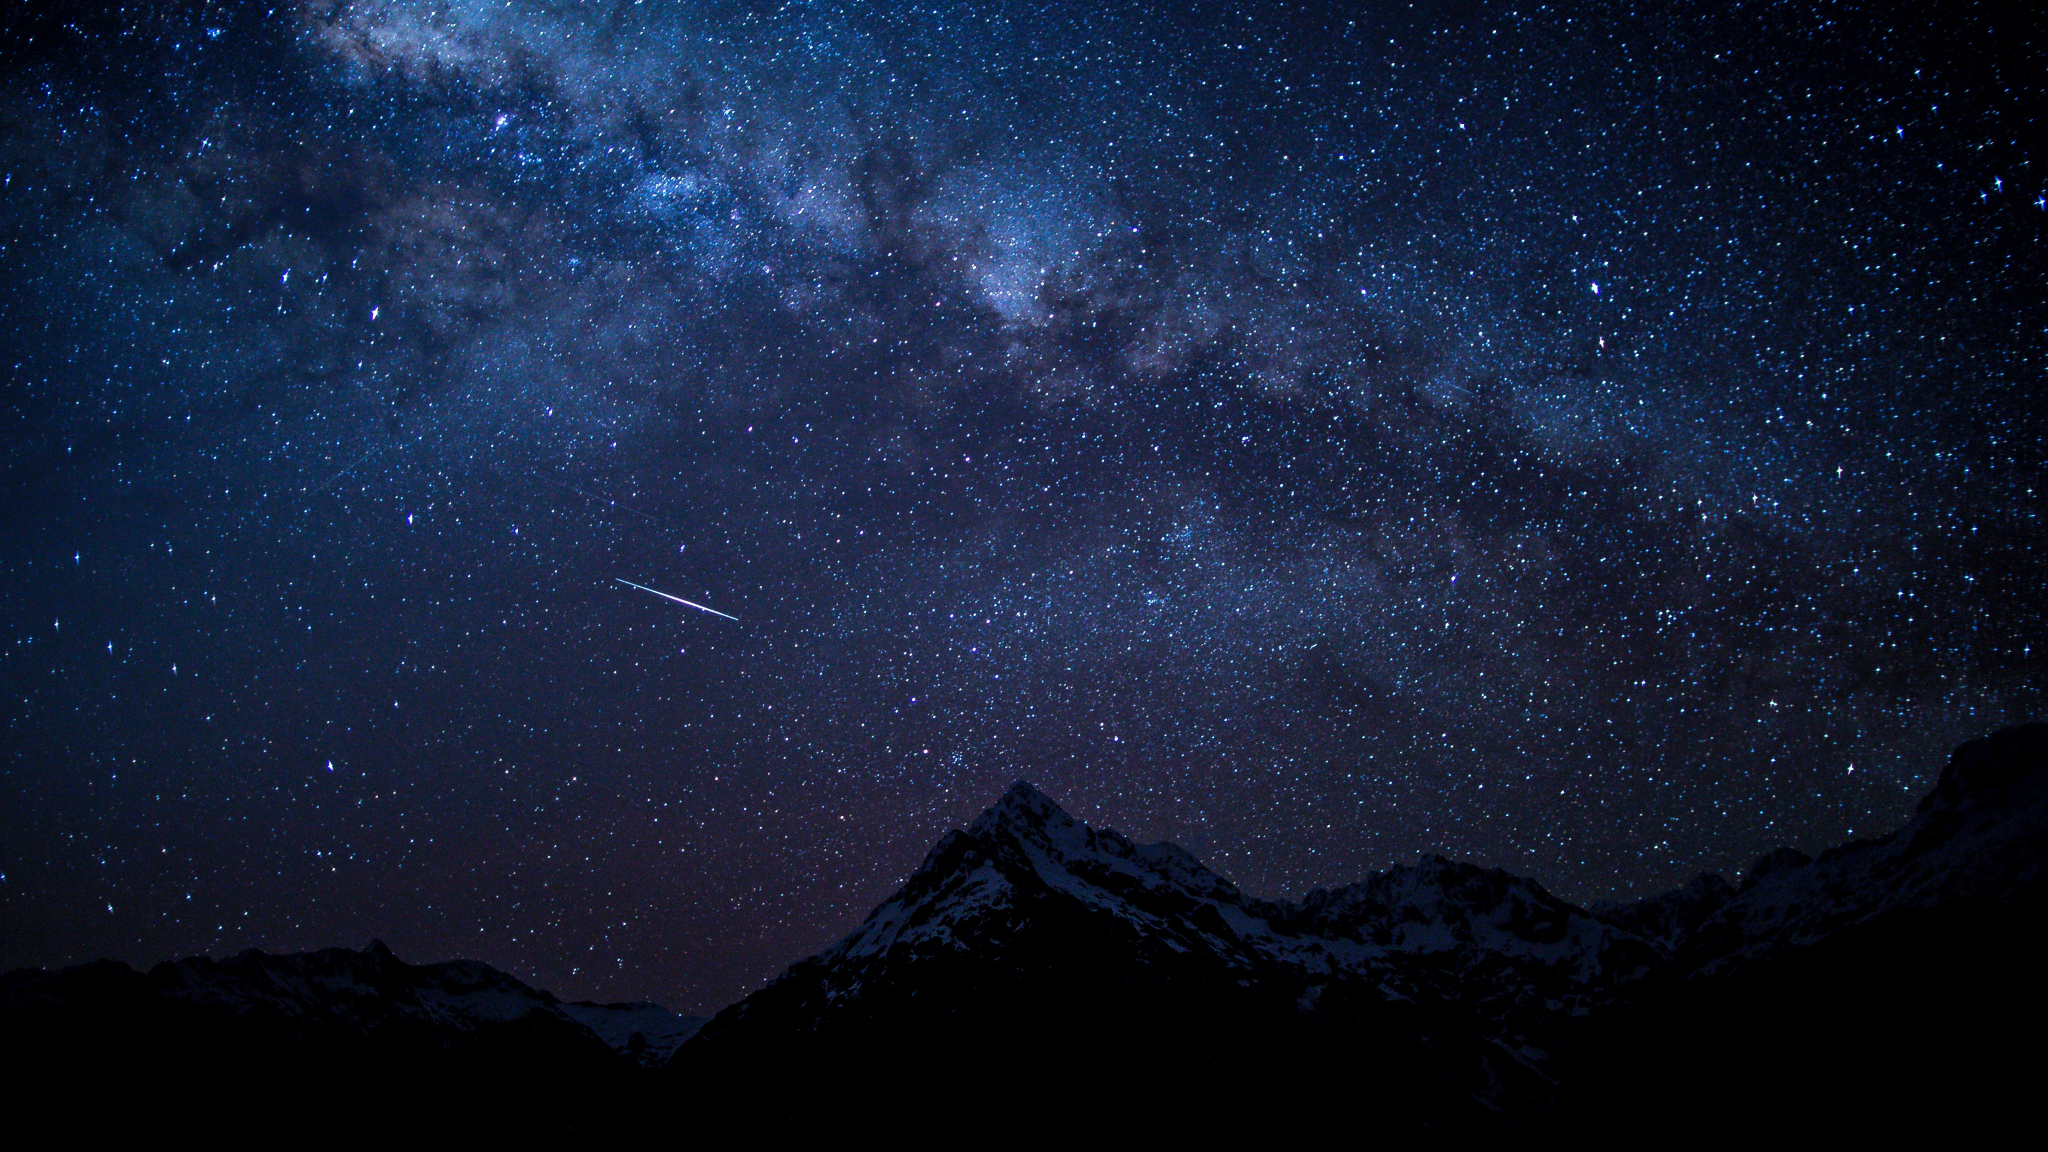 Sự kết hợp giữa bầu trời đầy sao và những dãy núi hùng vĩ là một cảnh tượng rất đặc biệt và lãng mạn trong đêm đen. Đừng bỏ lỡ cơ hội để trầm mình vào khoảnh khắc tuyệt đẹp này bằng cách nhấp chuột để xem hình ảnh núi đêm sao rực rỡ!